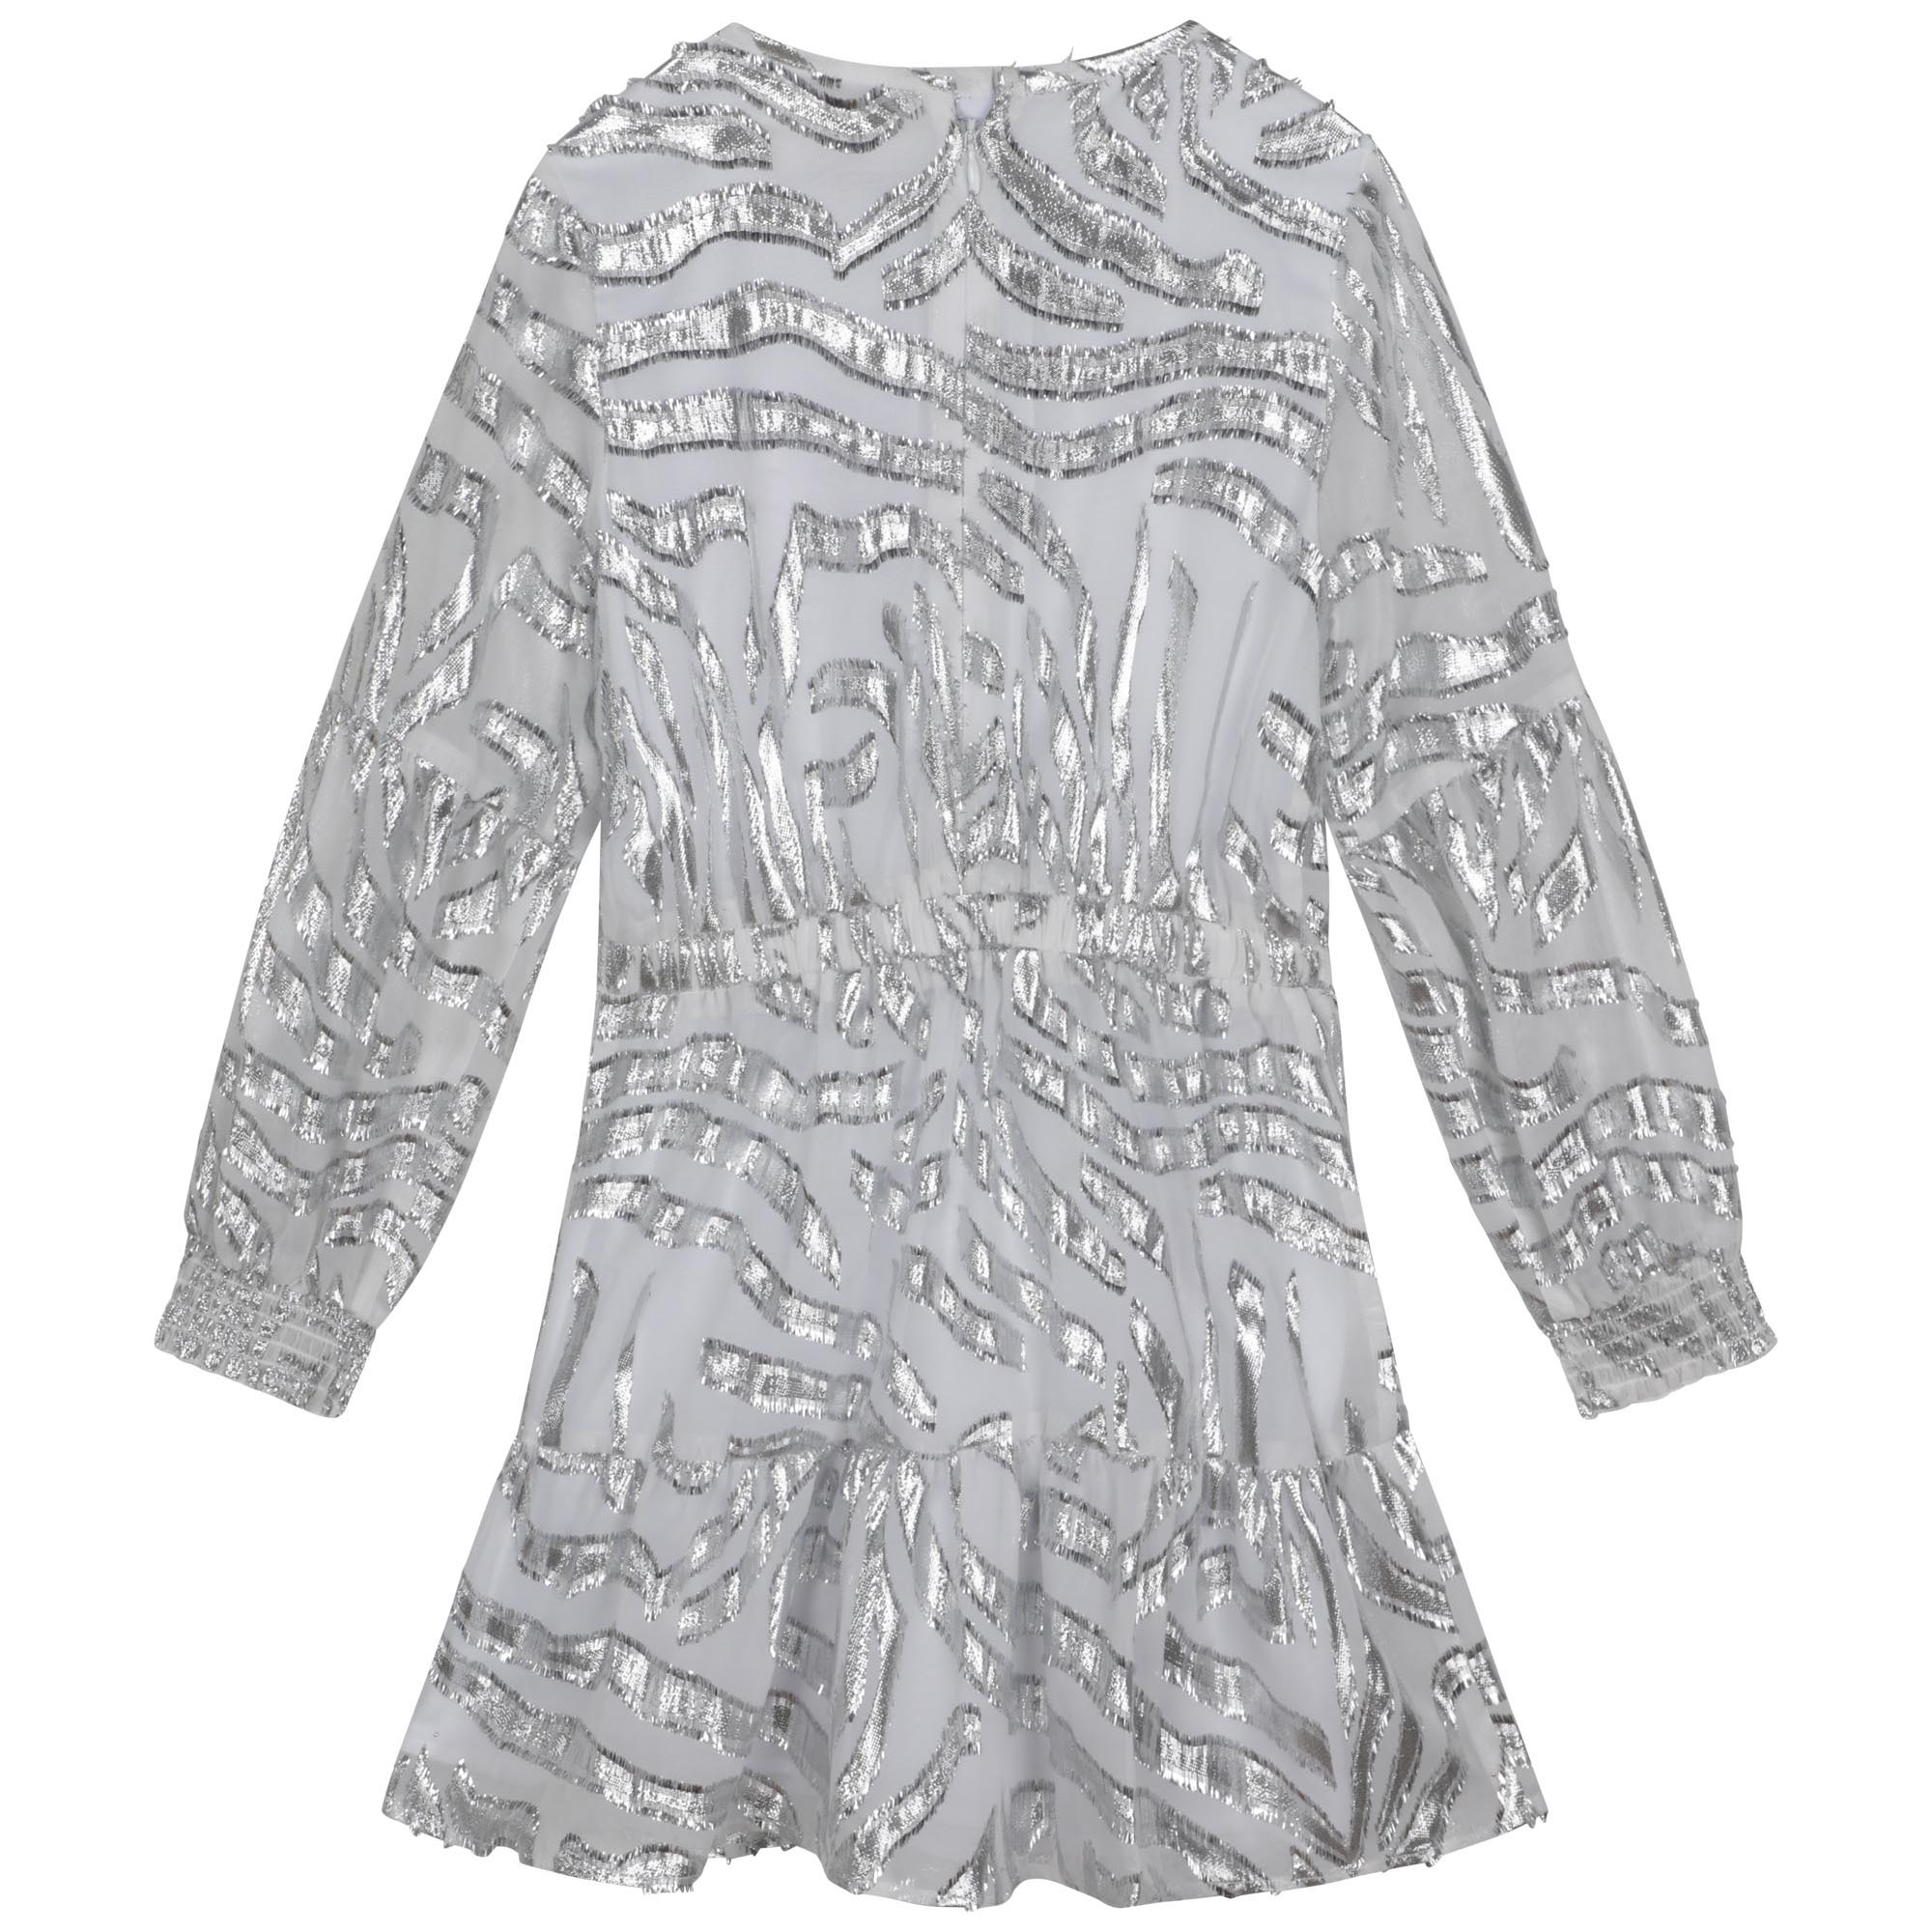 Flared zebra-print dress MICHAEL KORS for GIRL